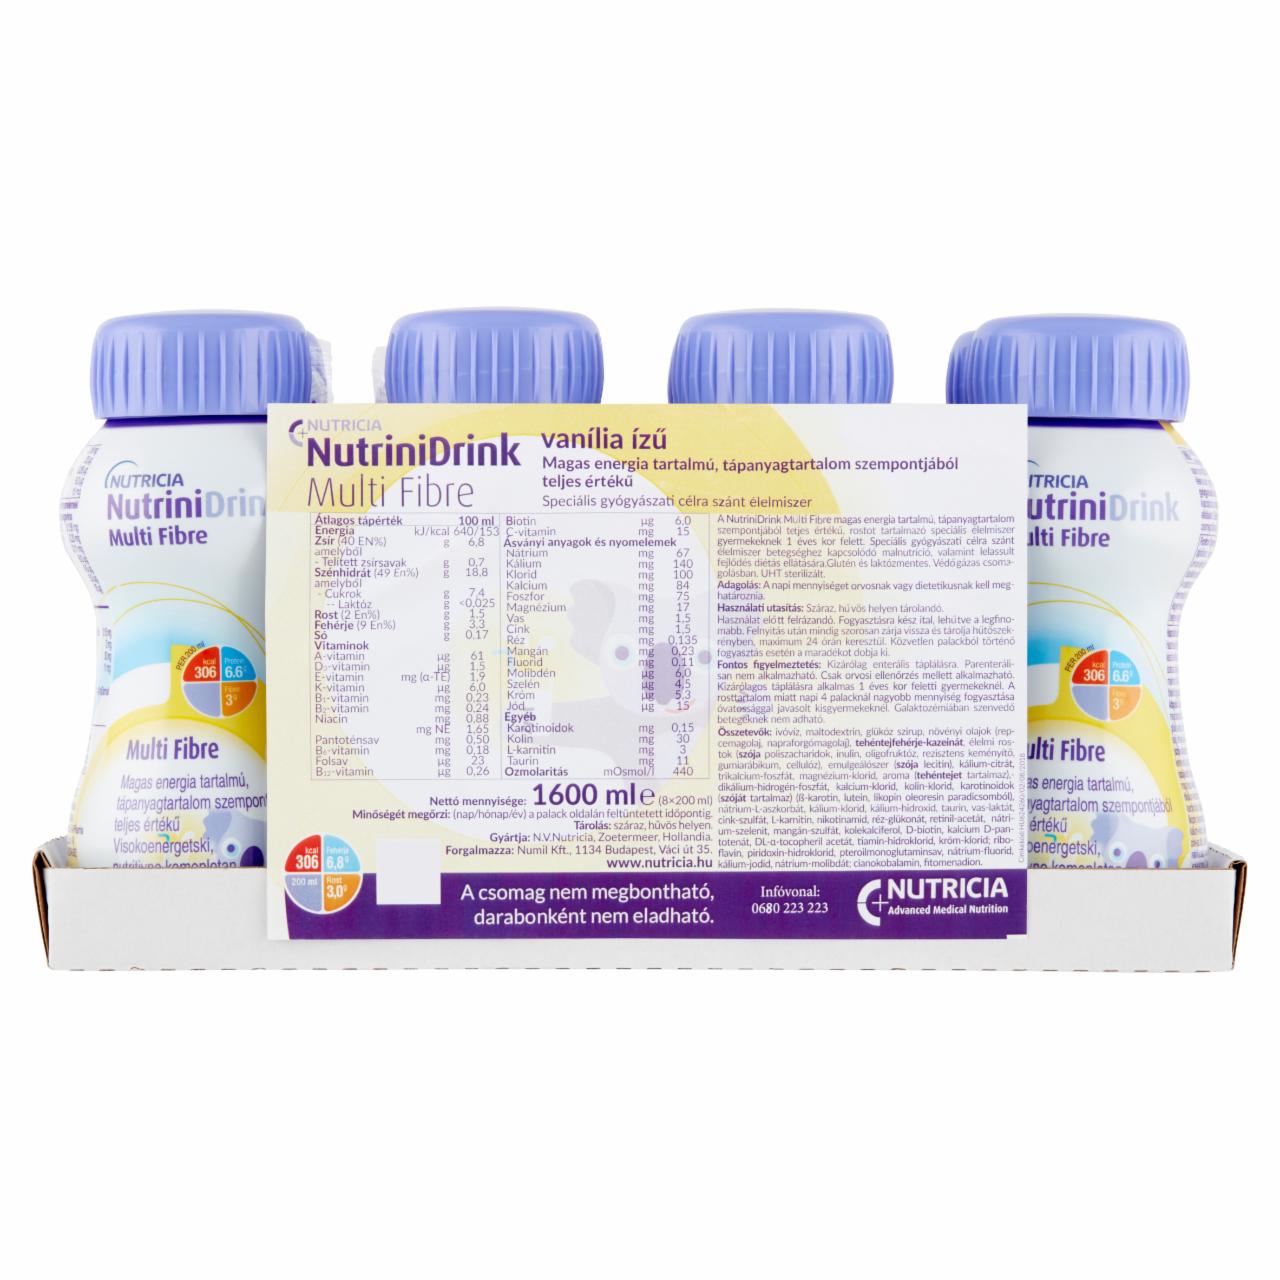 Képek - NutriniDrink Multi Fibre vanília speciális gyógyászati célra szánt élelmiszer 8 x 200 ml (1600 ml)